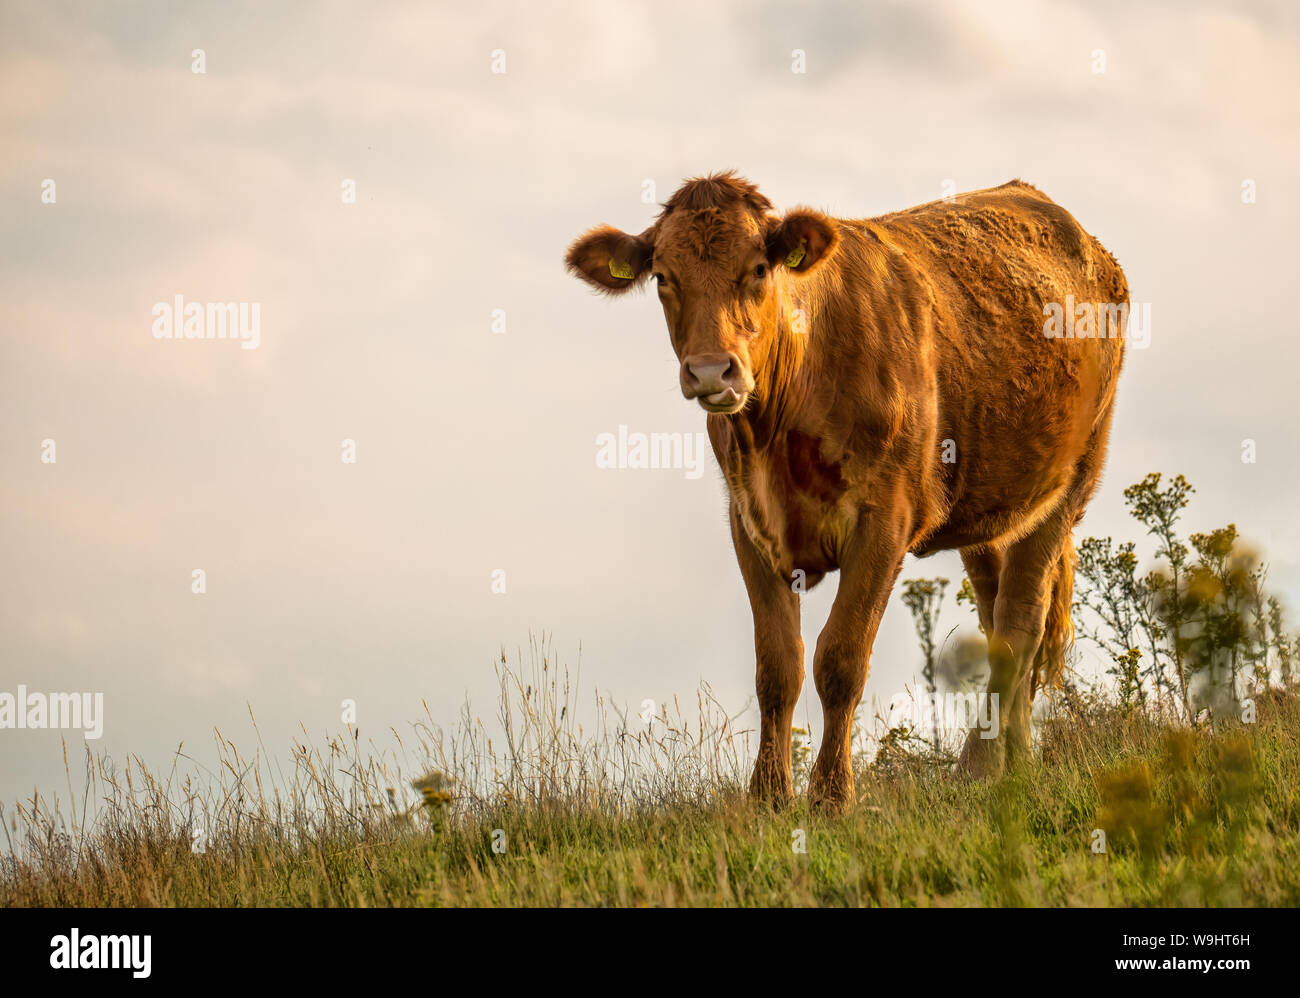 Vaca en la cima de la colina de pie mirando hacia la cámara con fondo de cielo dando espacio para añadir texto Foto de stock